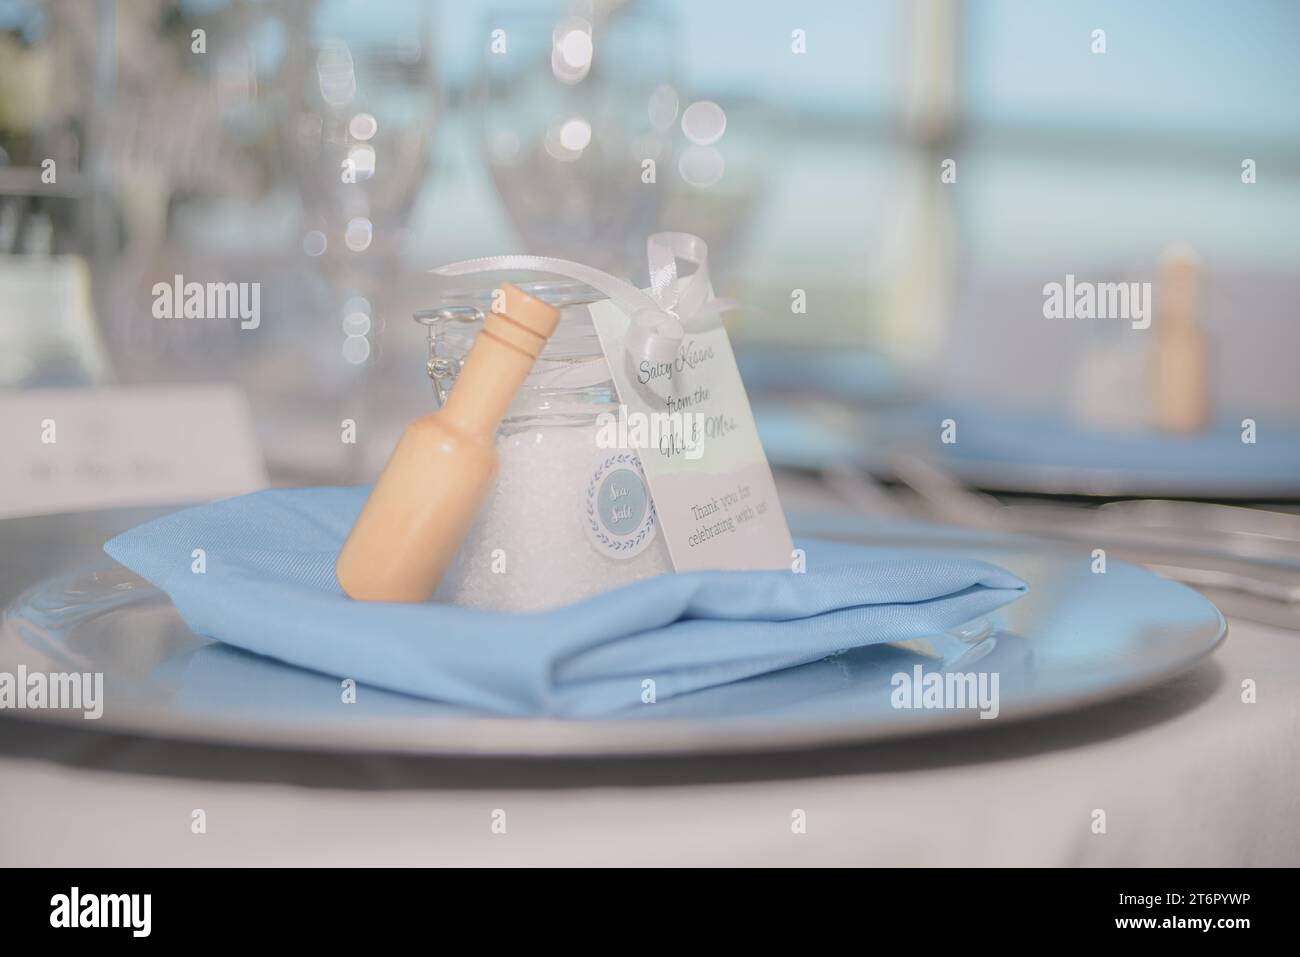 Bellissimo vaso trasparente riempito di sale marino con fiocco bianco e legna su coperta blu su trey di fronte al bokeh bianco Foto Stock